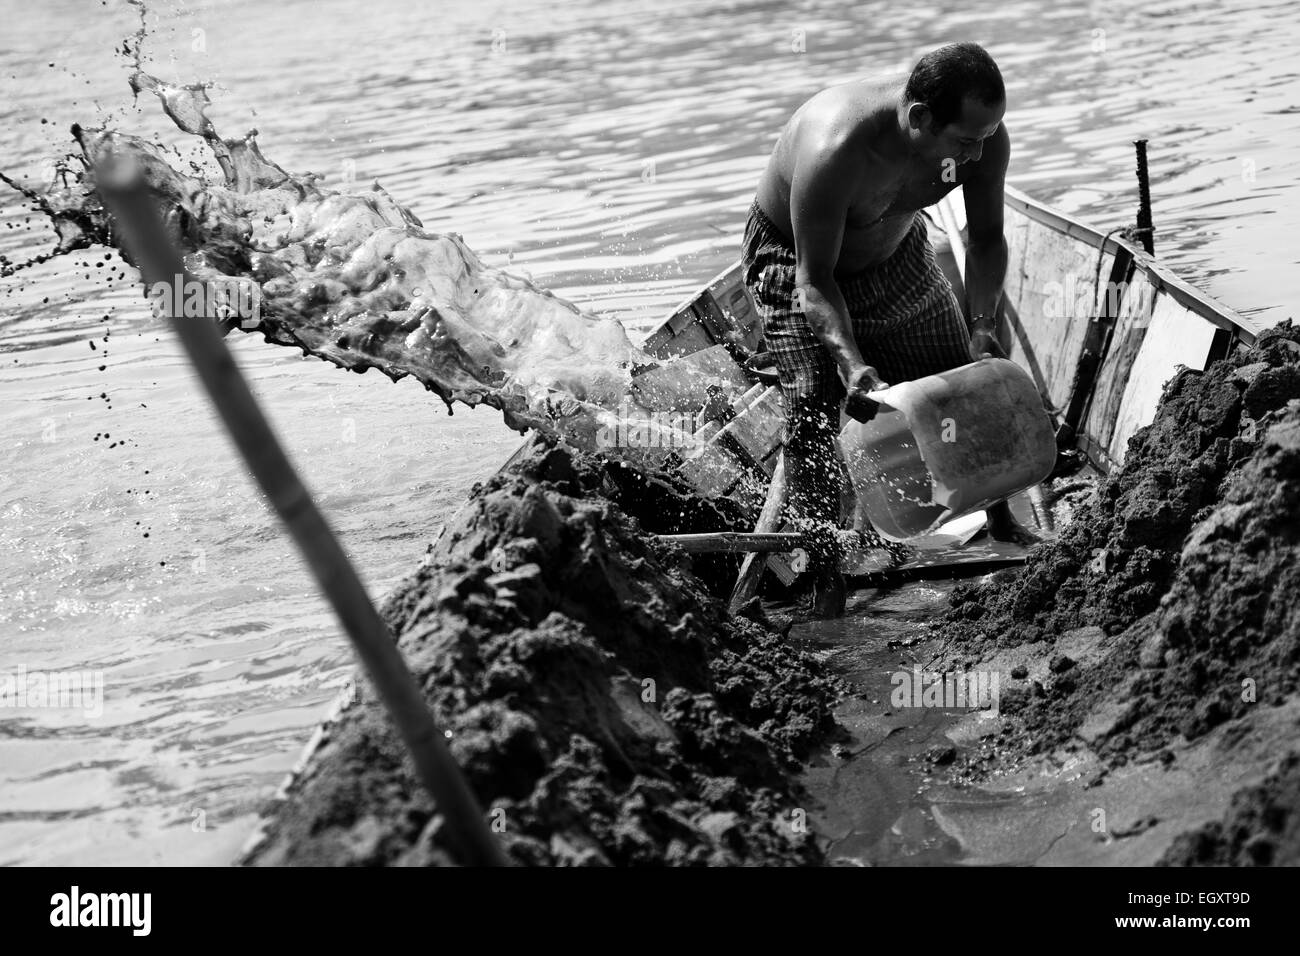 Un mineur à étriers de sable l'eau hors du bateau ancré au milieu de la rivière La Vieja à Cartago, Colombie. Banque D'Images